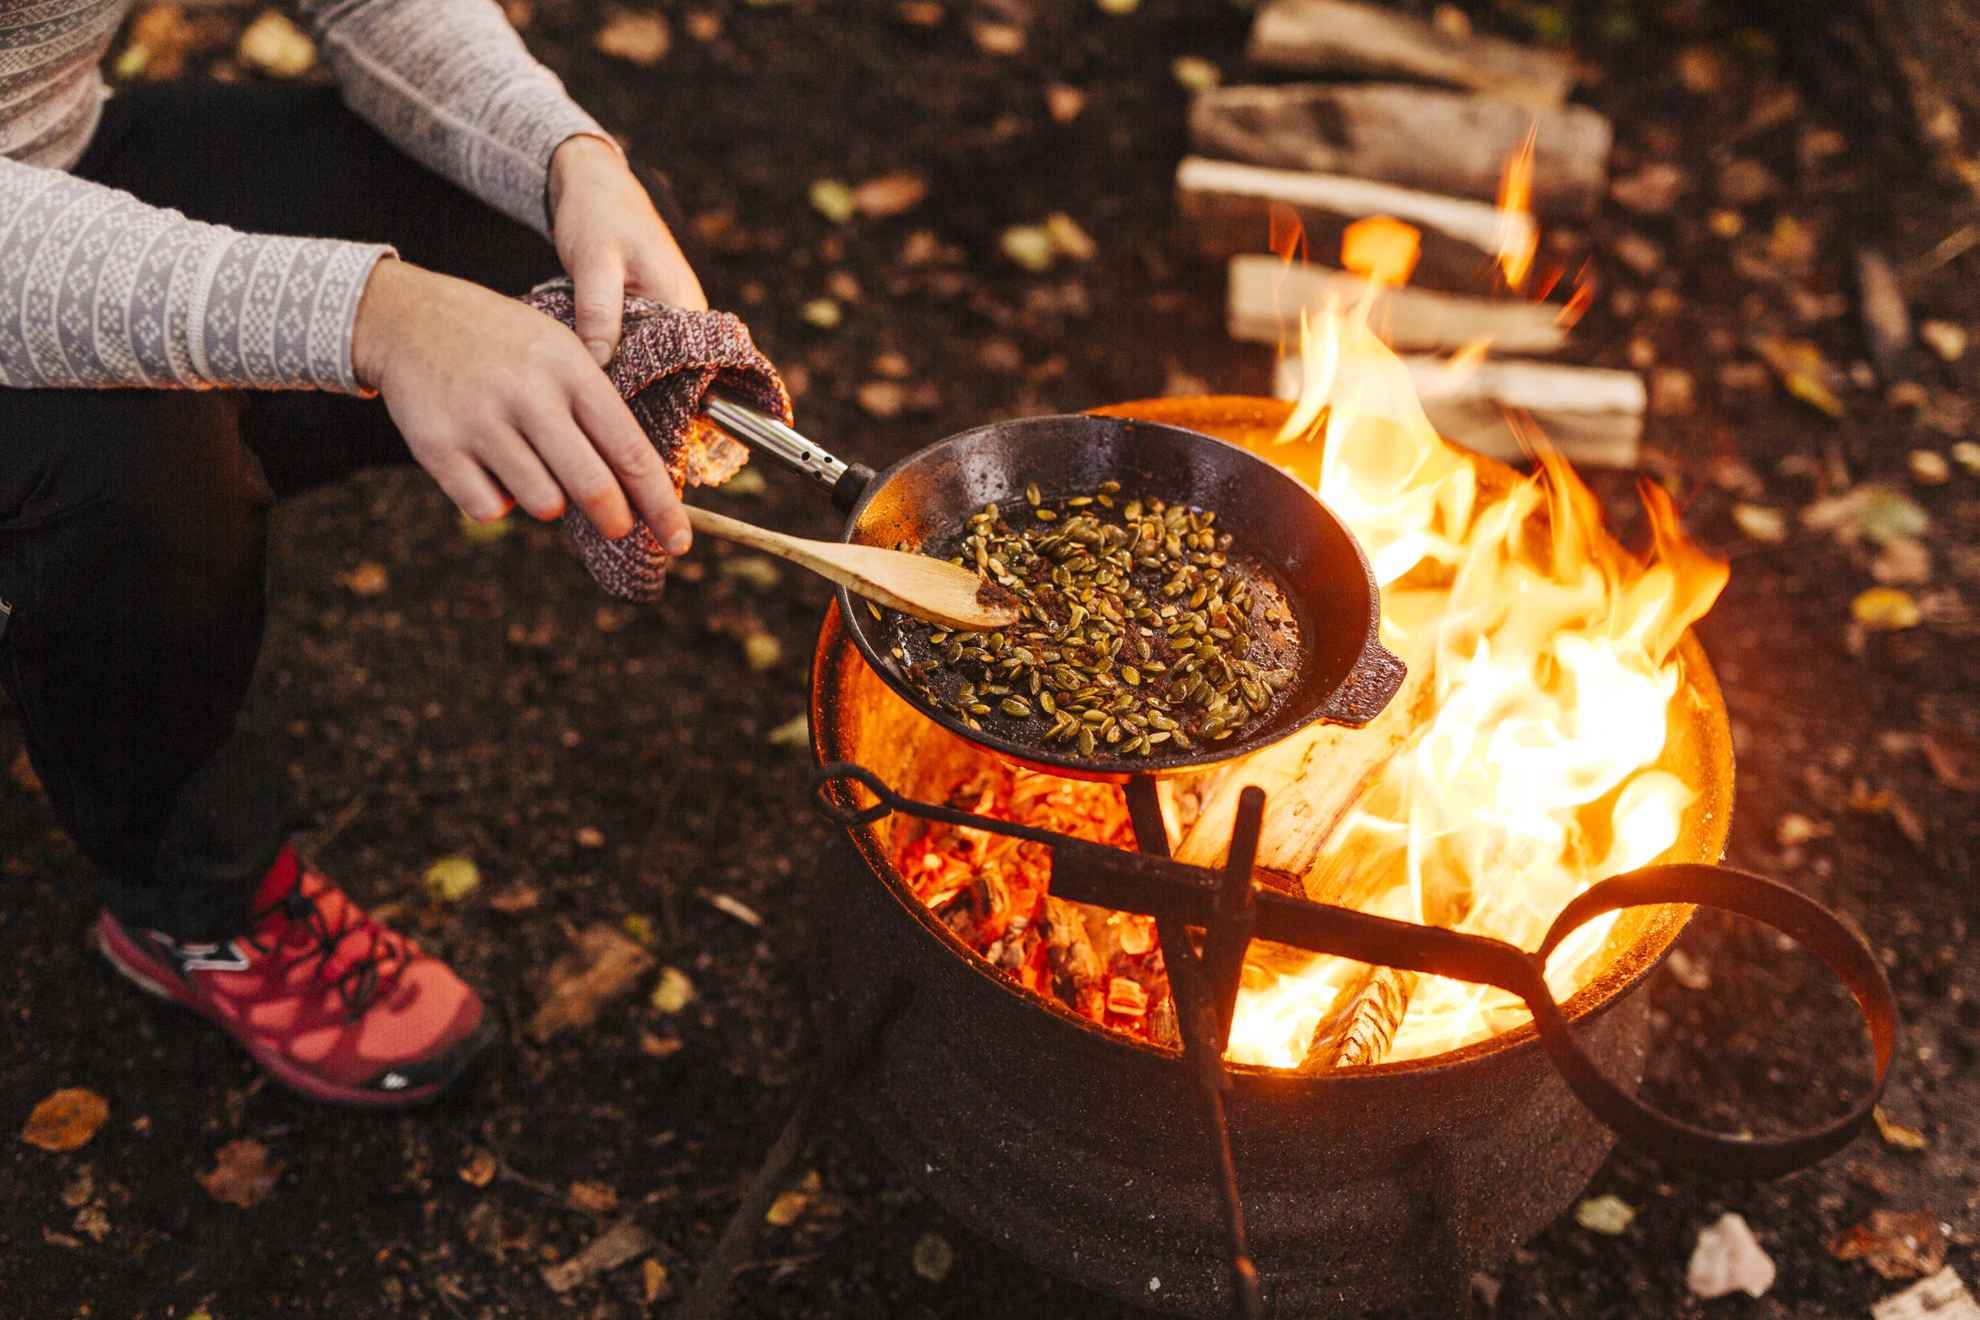 Iemand bakt eten boven een open vuur in het bos.